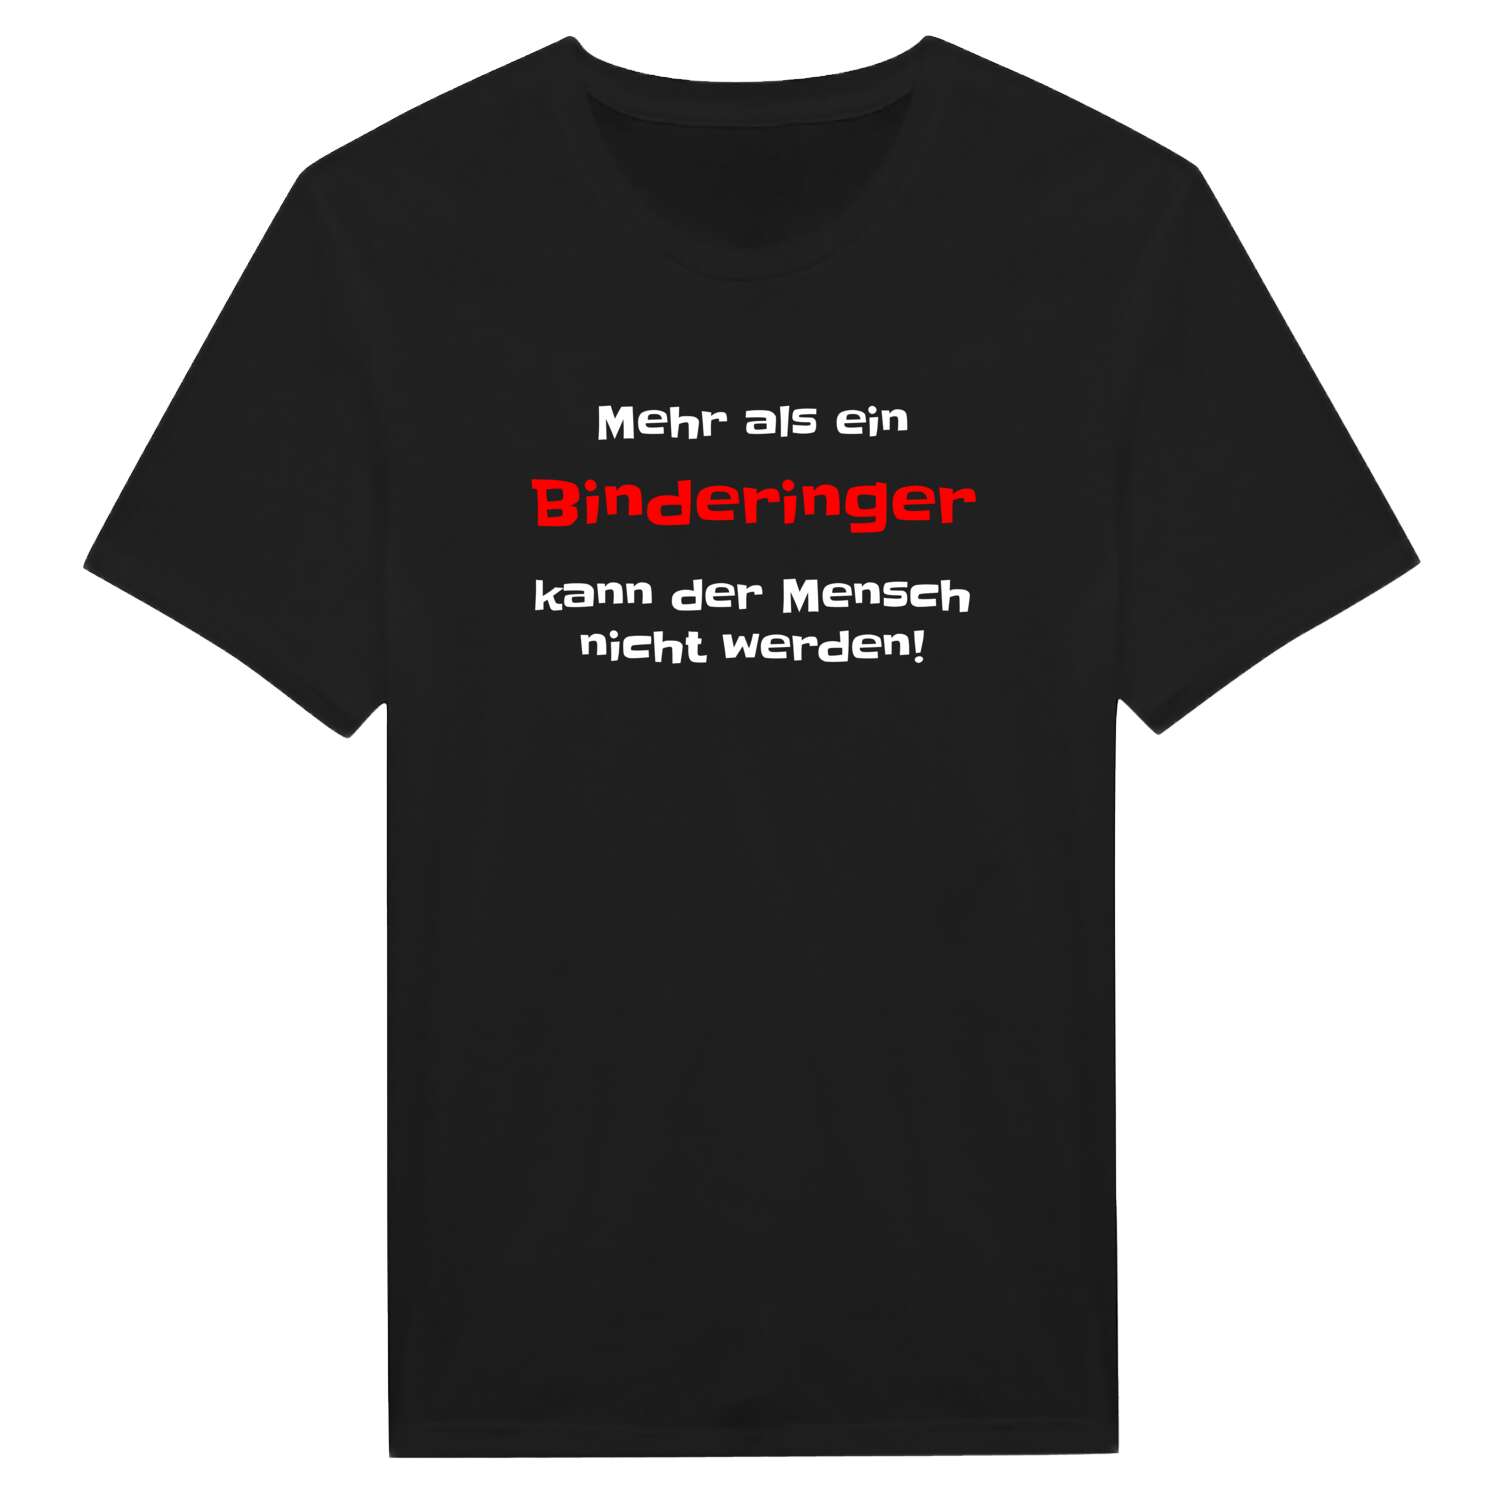 Bindering T-Shirt »Mehr als ein«